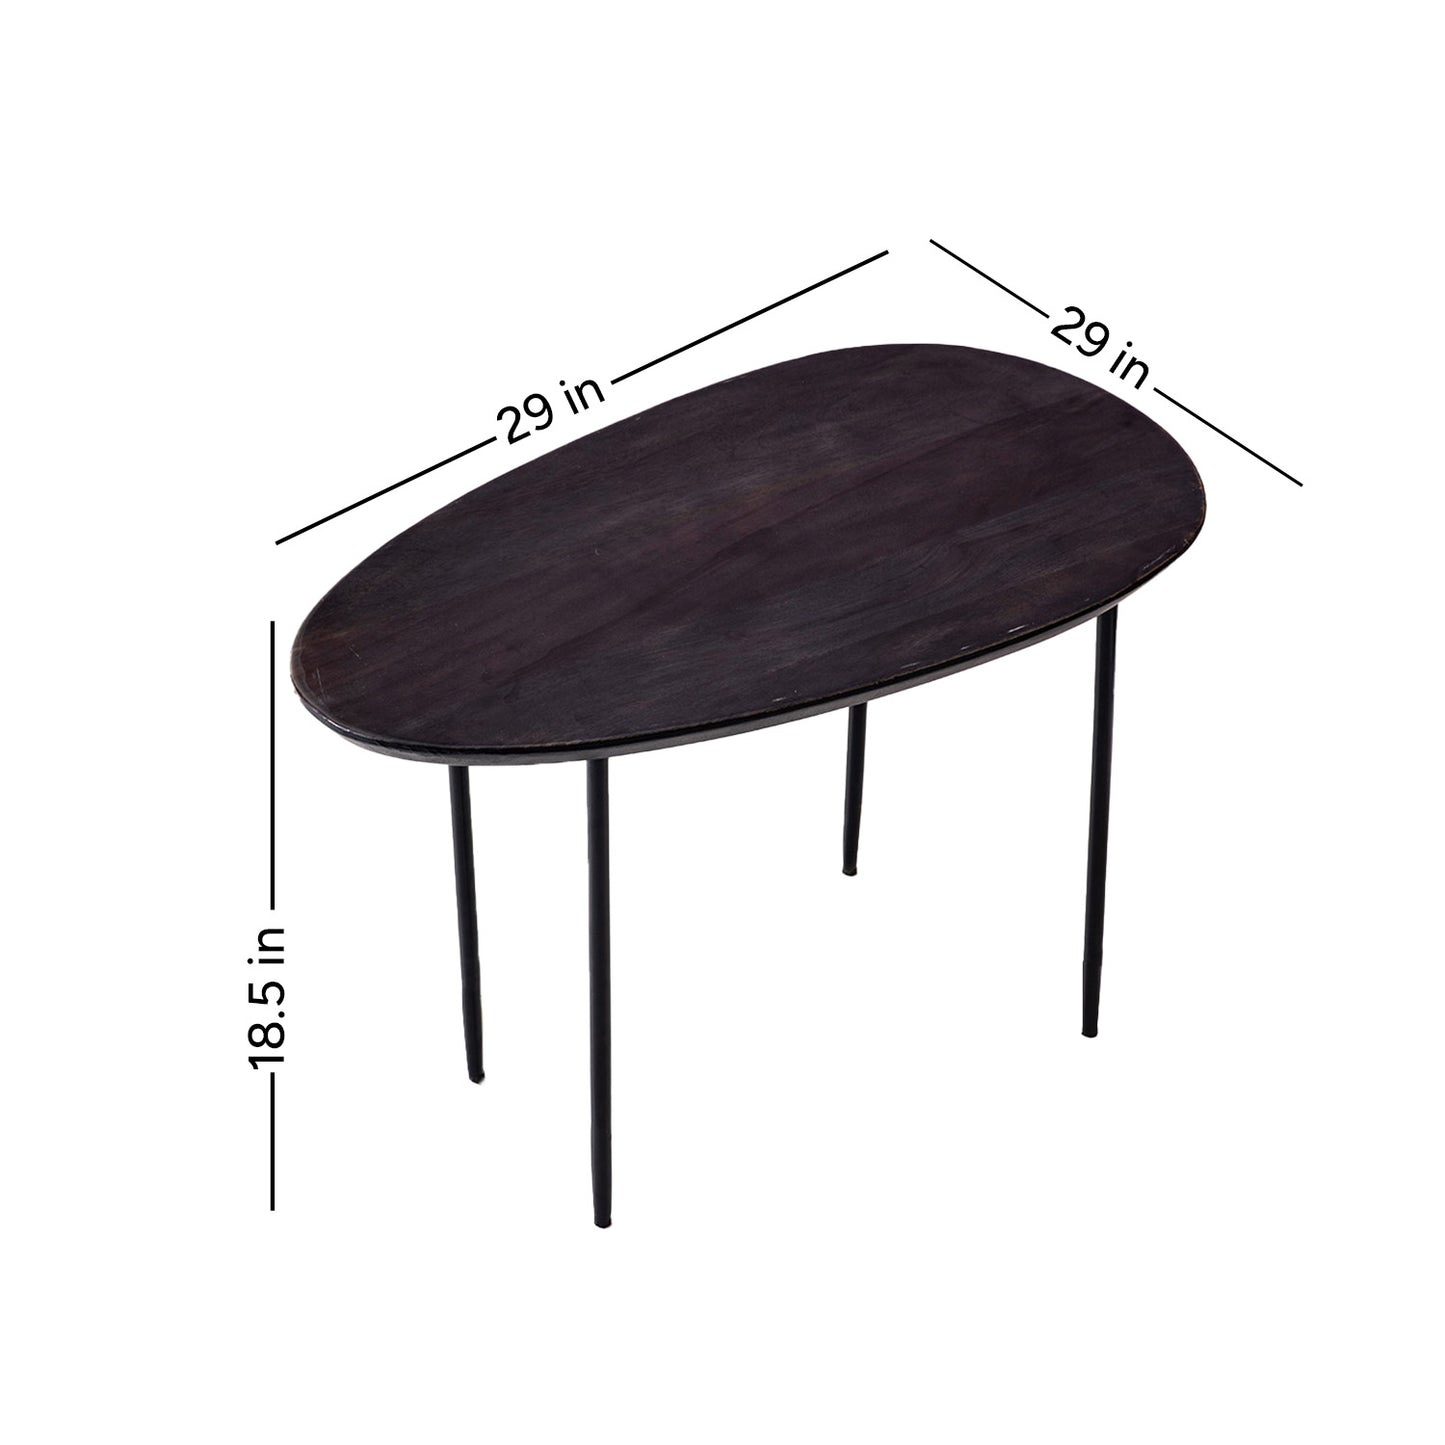 Elemental Elegance: Wood & Metal Side Table